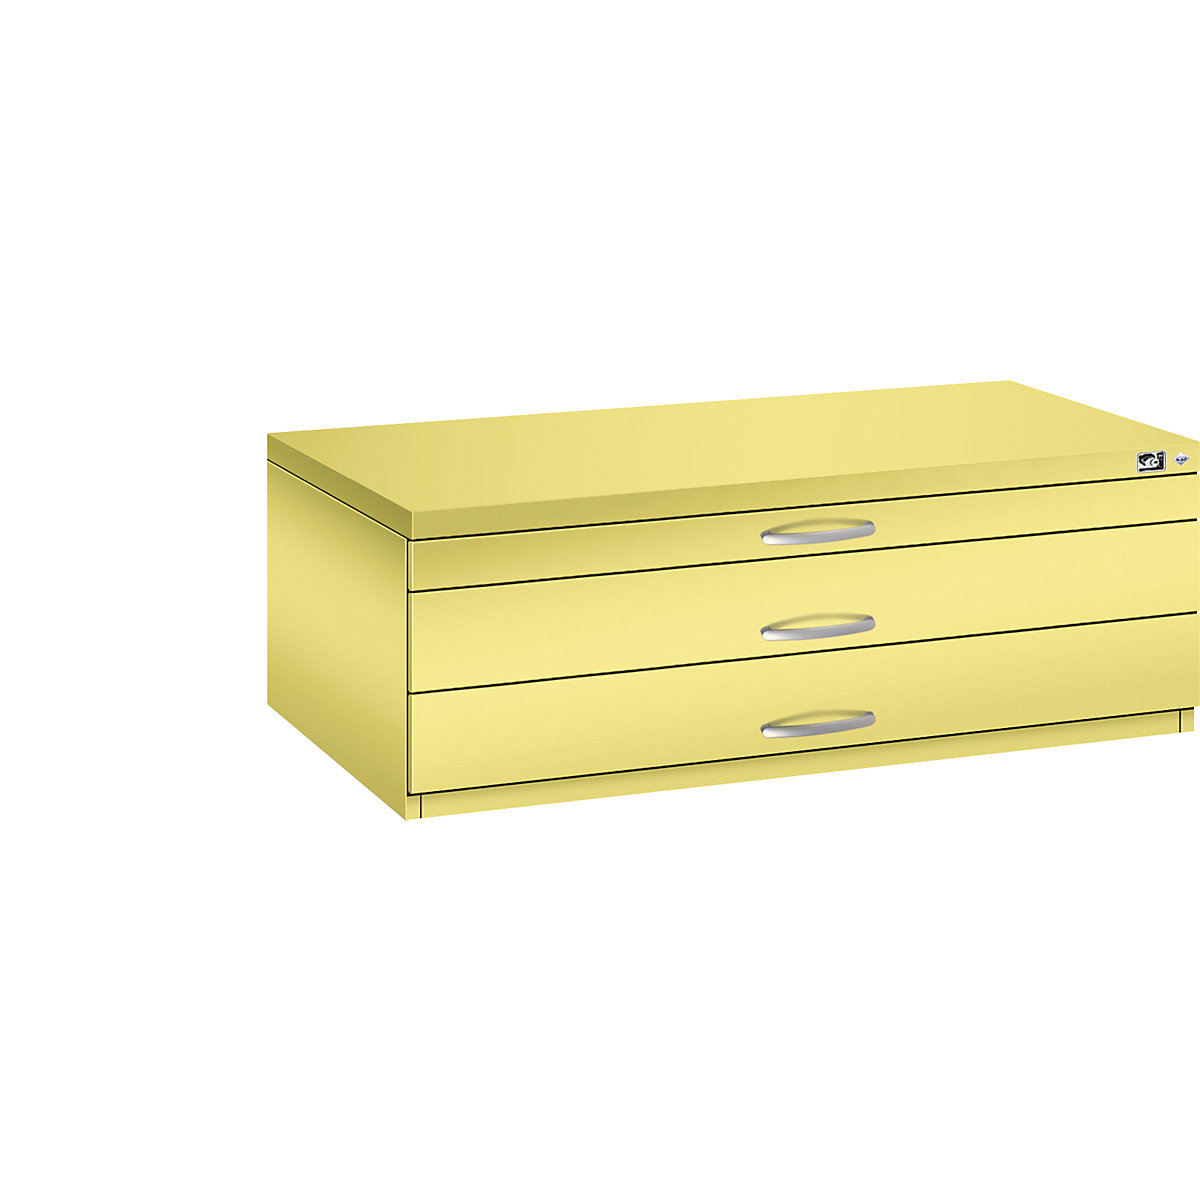 Archivio per disegni – C+P, UNI A1, 3 cassetti, altezza 420 mm, giallo zolfo-16